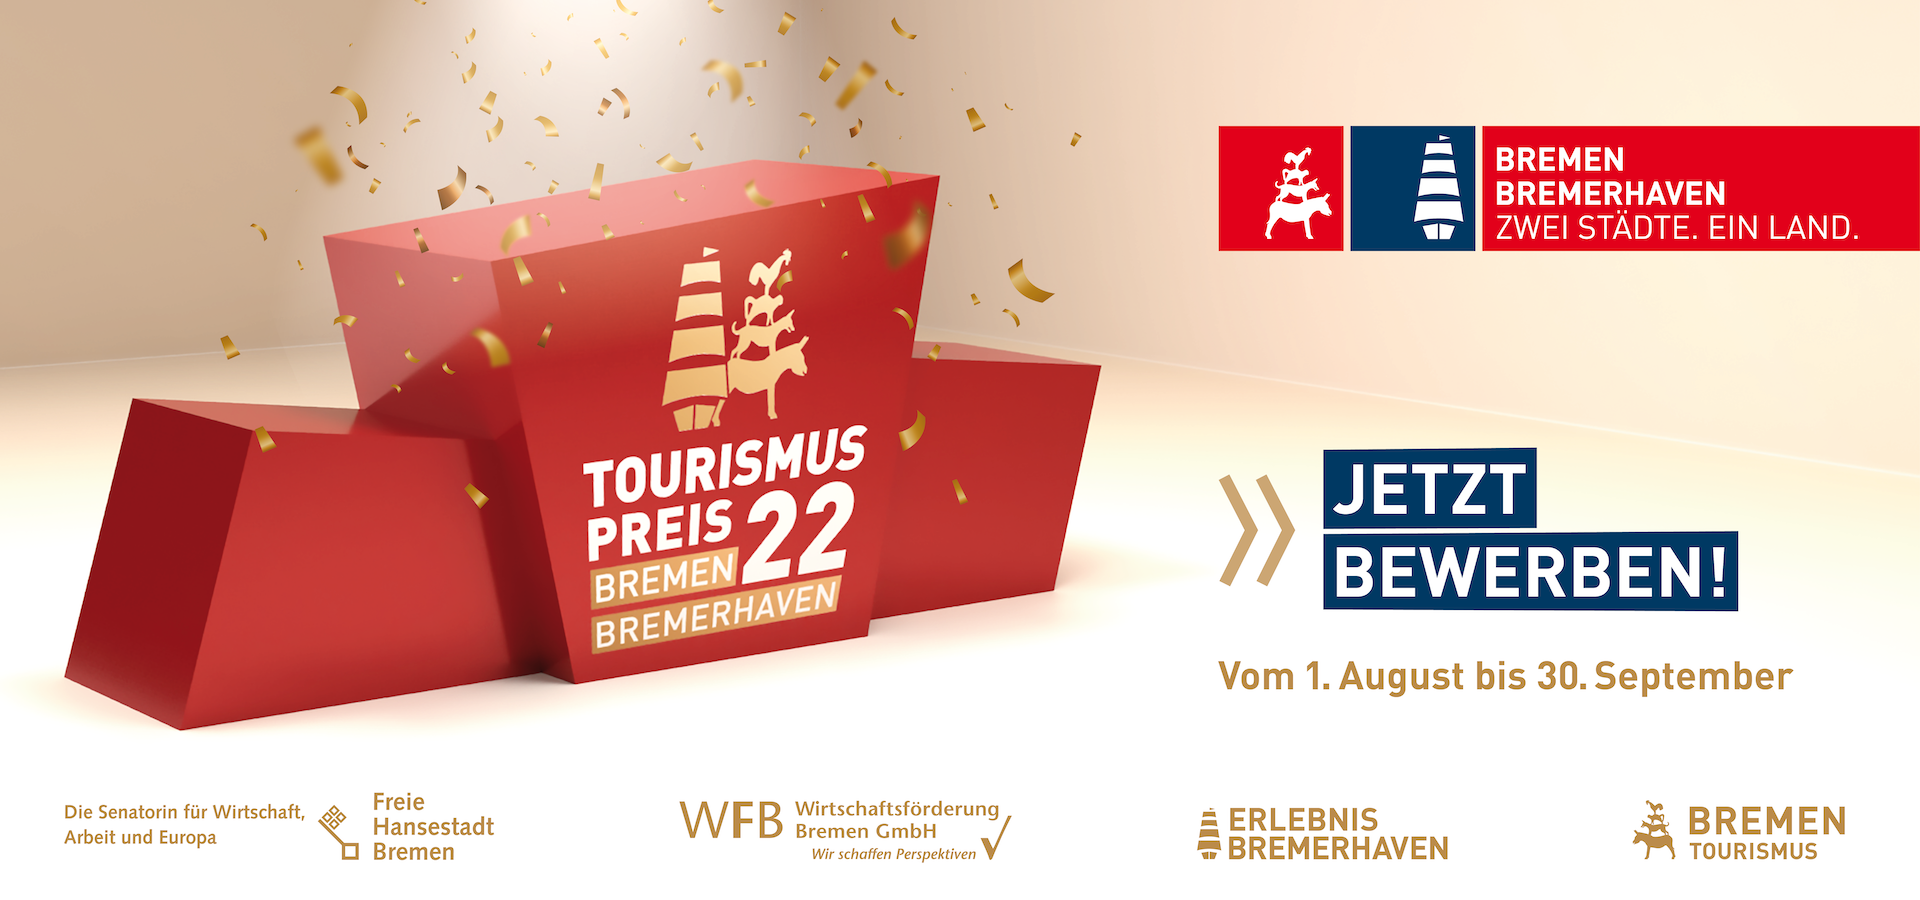 Tourismuspreises 2022 im Land Bremen; vom 1. August bis 30. September; Jetzt bewerben!